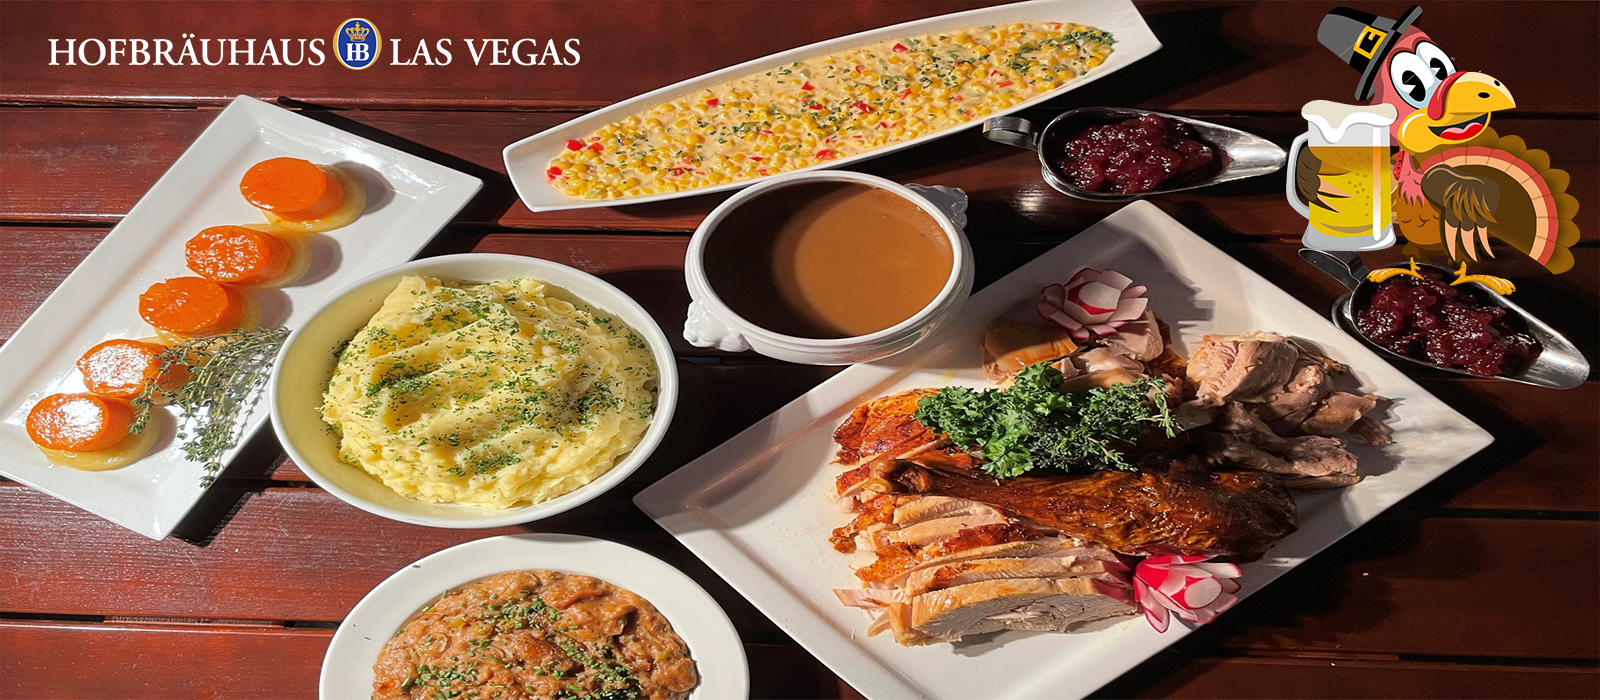 Thanksgiving in Las Vegas